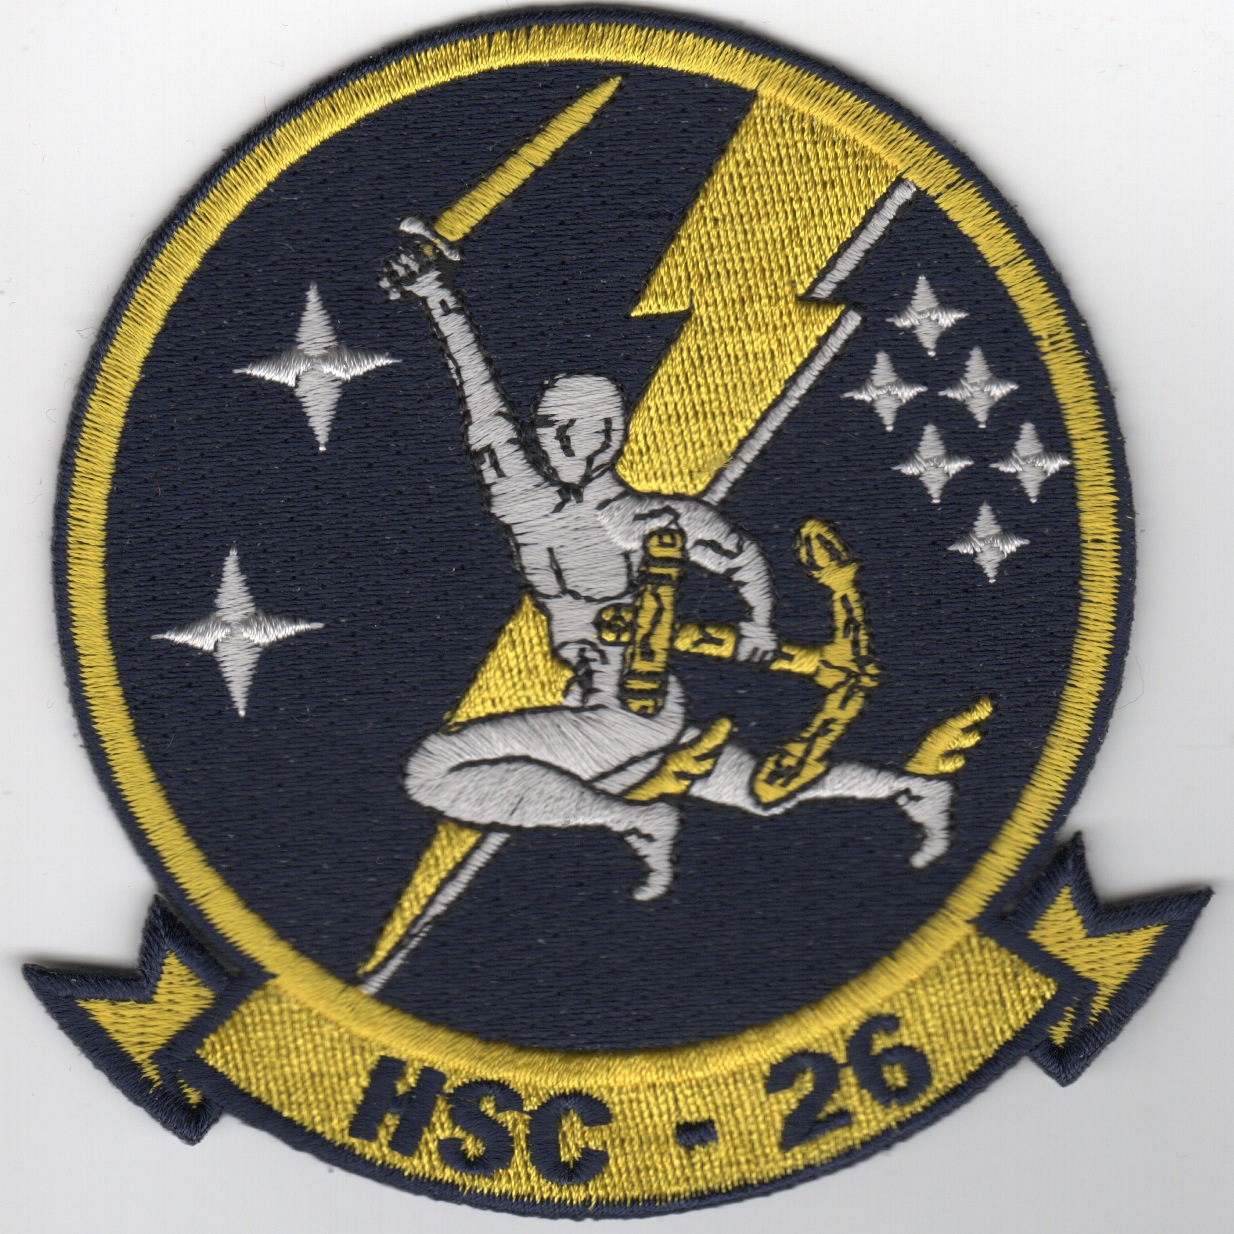 HSC-26 Squadron Patch (Blue/Man)